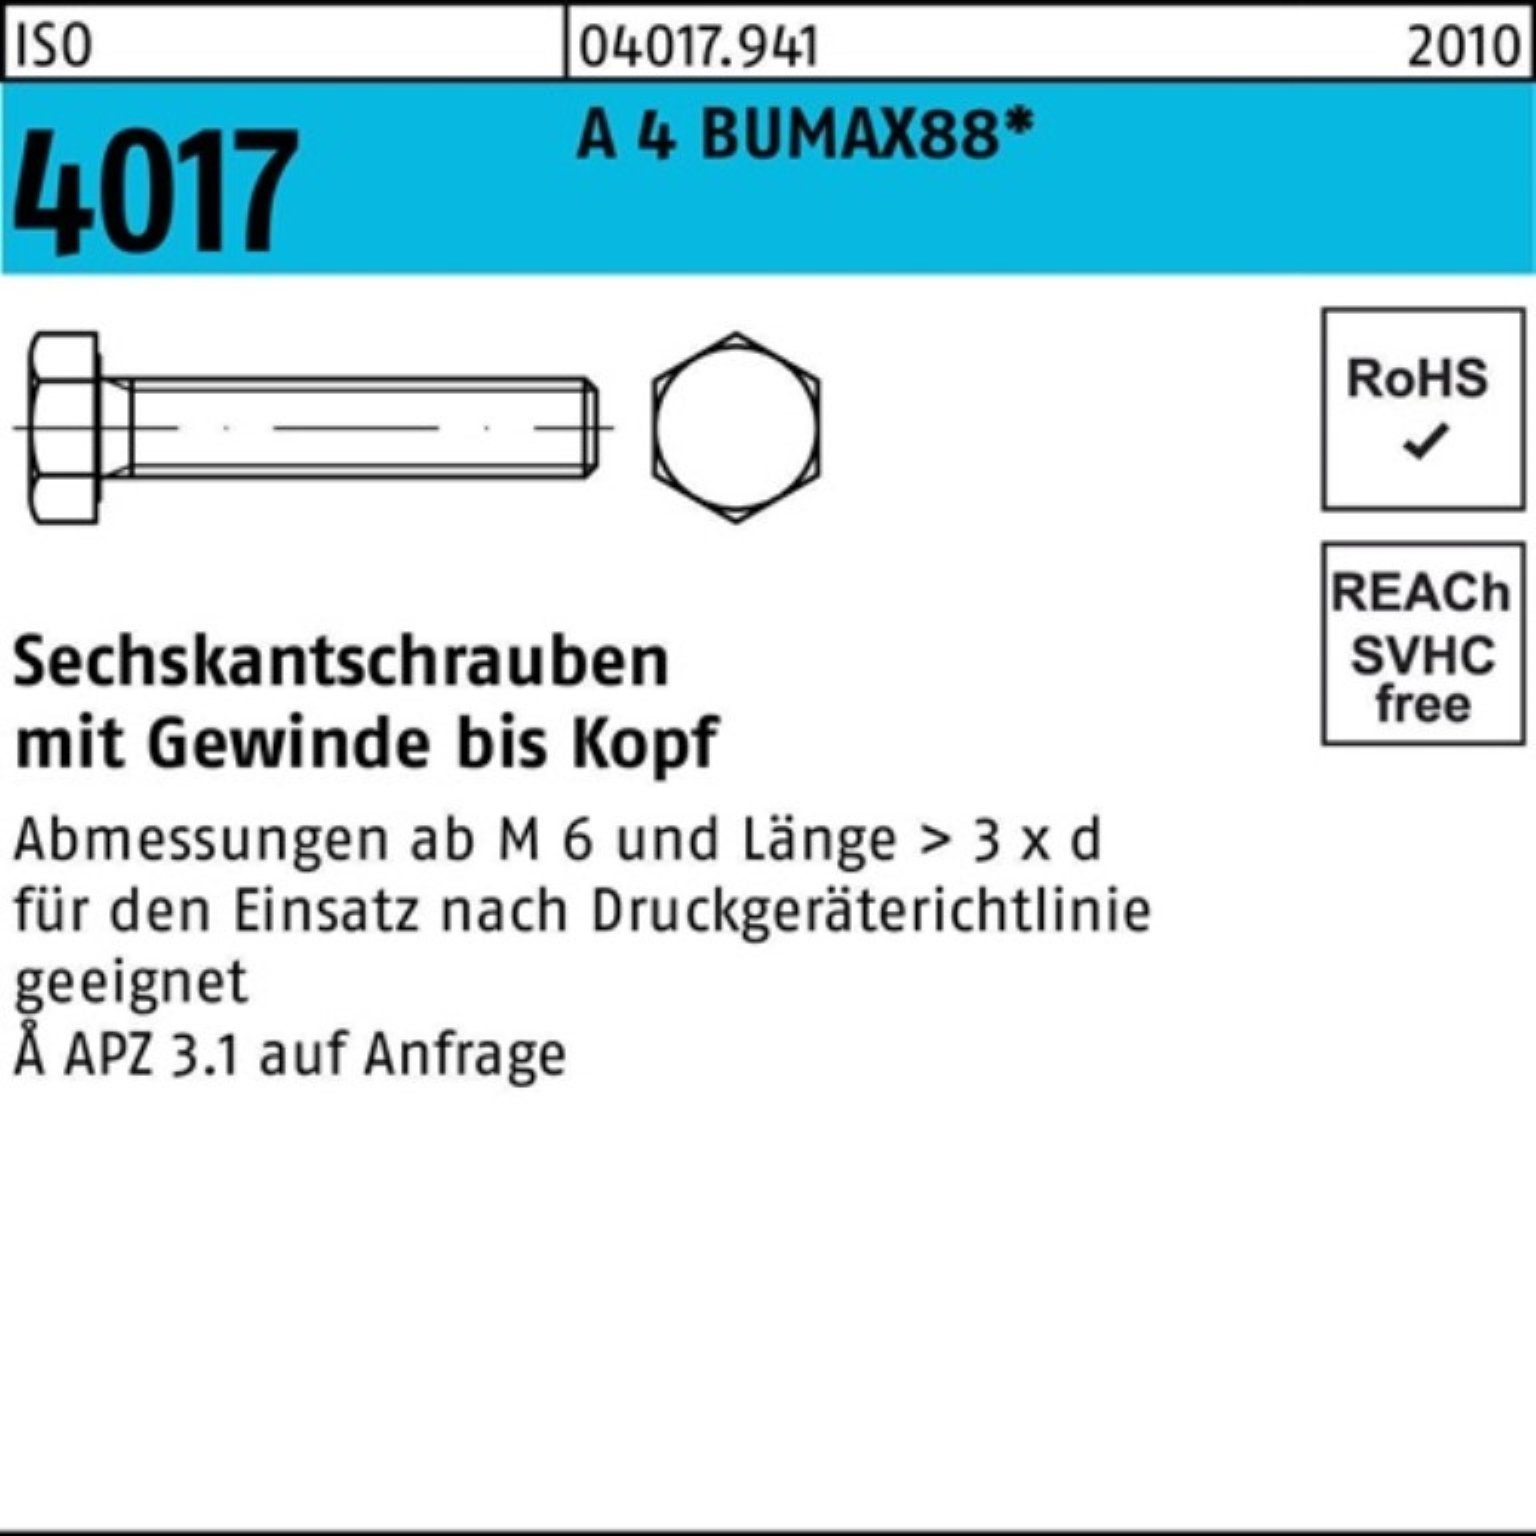 Bufab 4 BUMAX88 VG ISO Pack M12x 25 100er Stück 4017 40 A Sechskantschraube Sechskantschraube